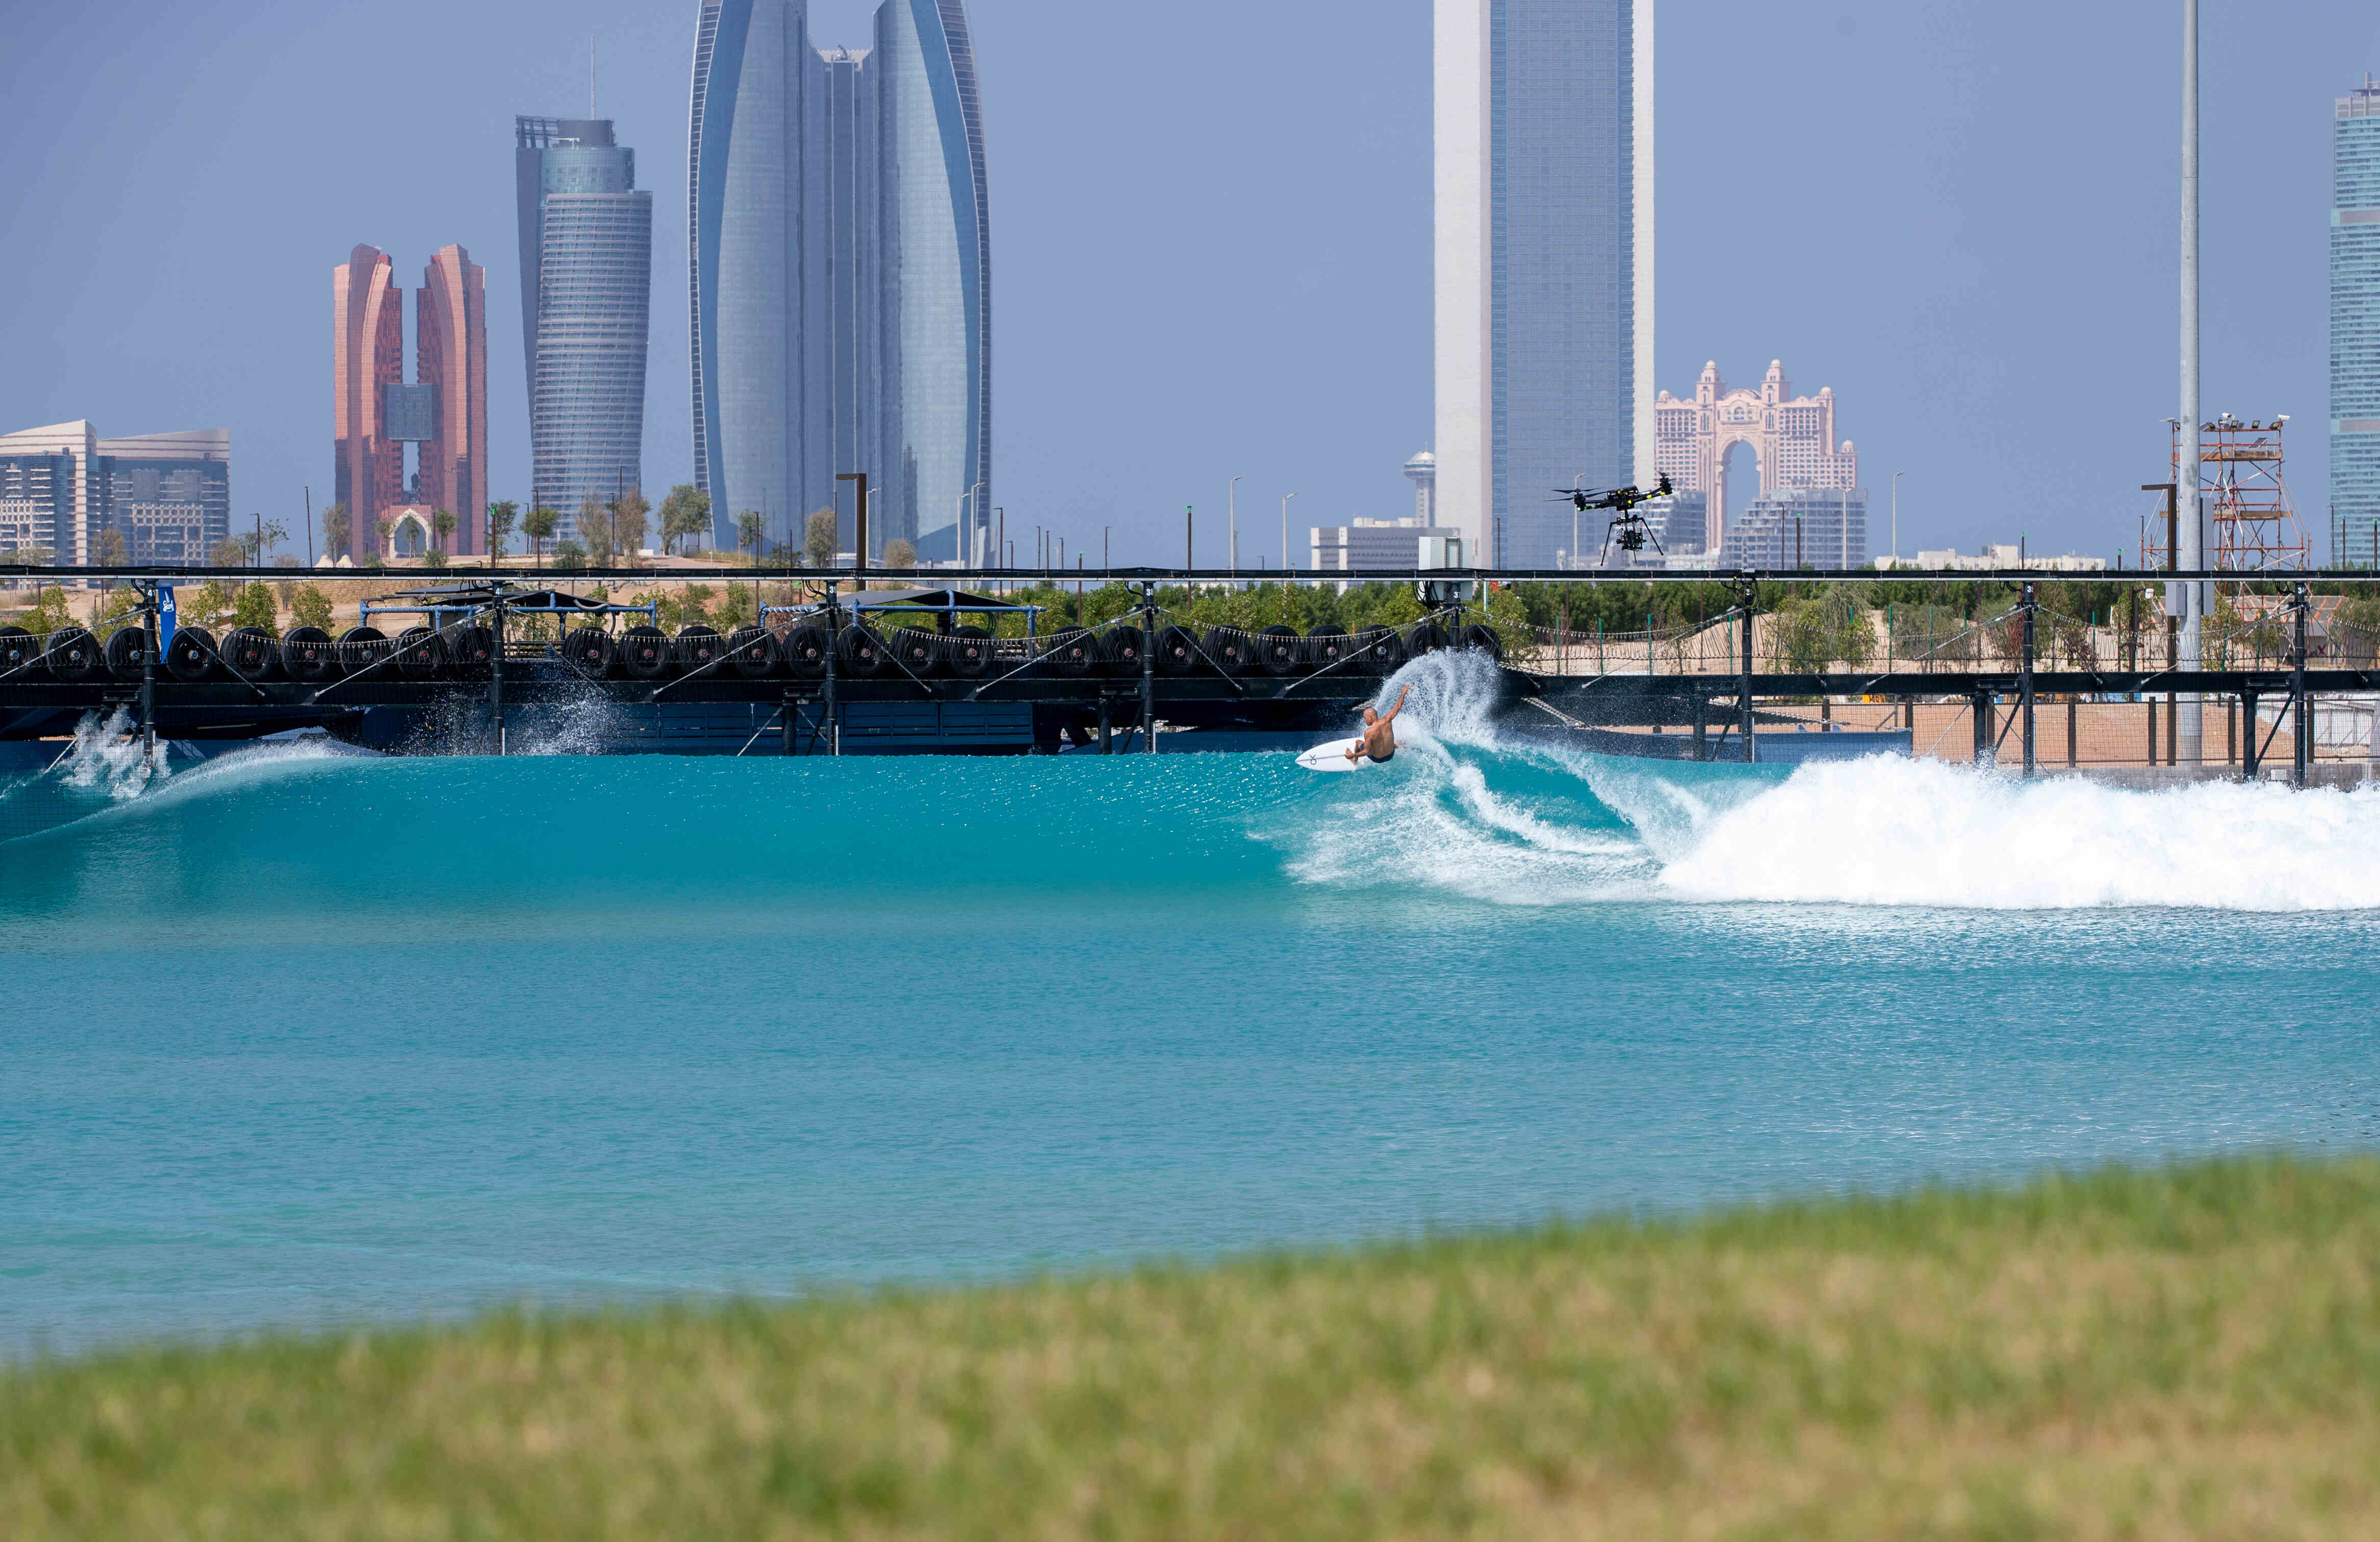 O visual surreal do surfe em Abu Dhabi. KS abre o leque.